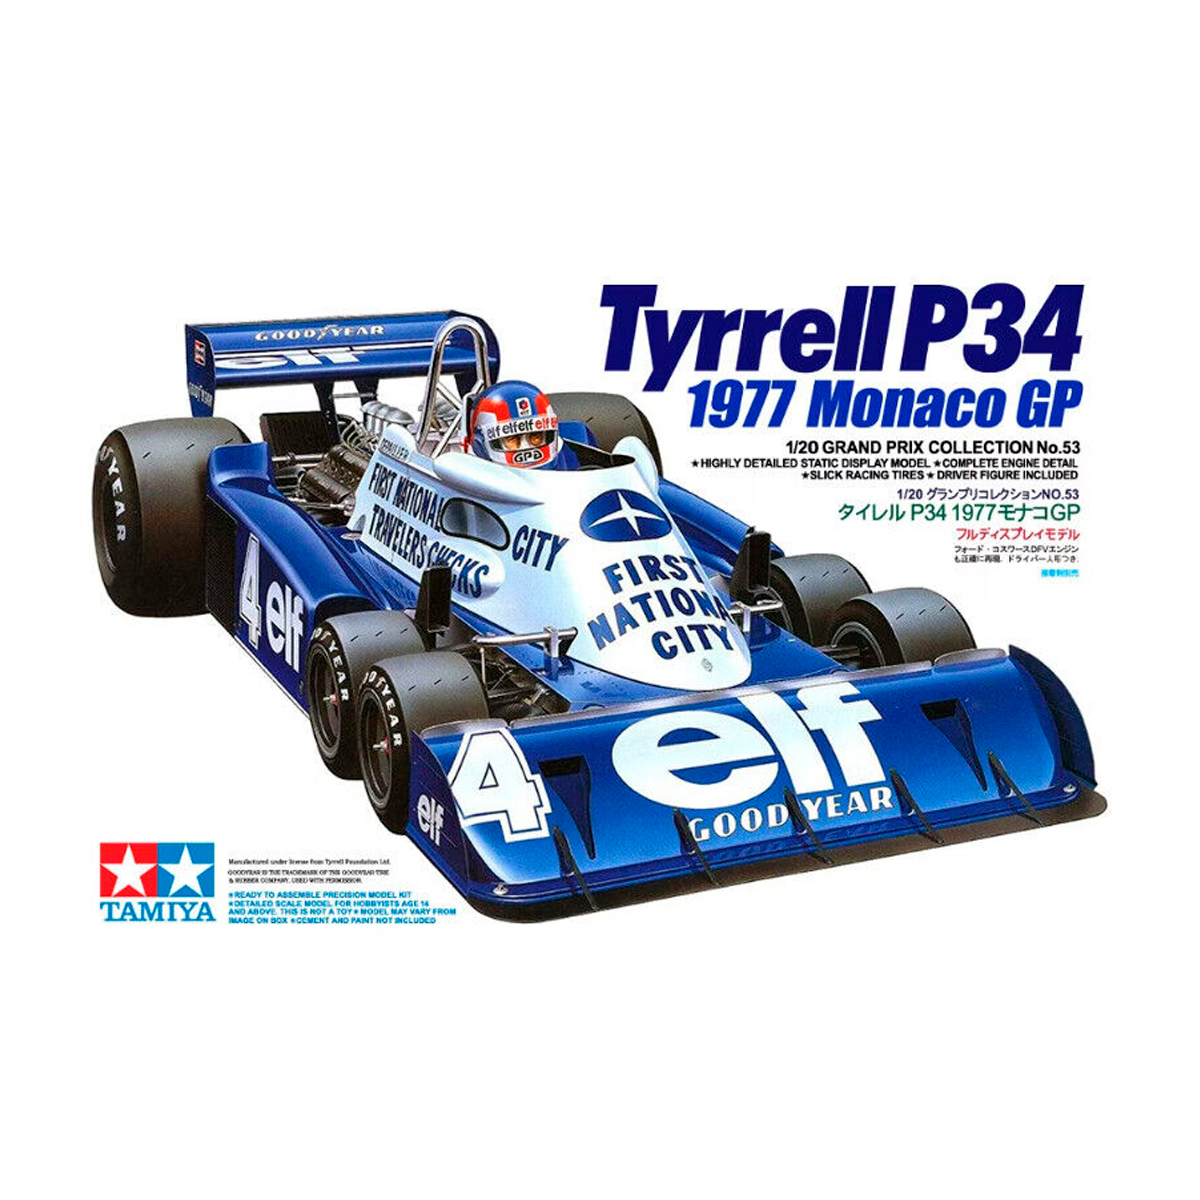 1/20 Tyrrell P34 1977 Monaco GP